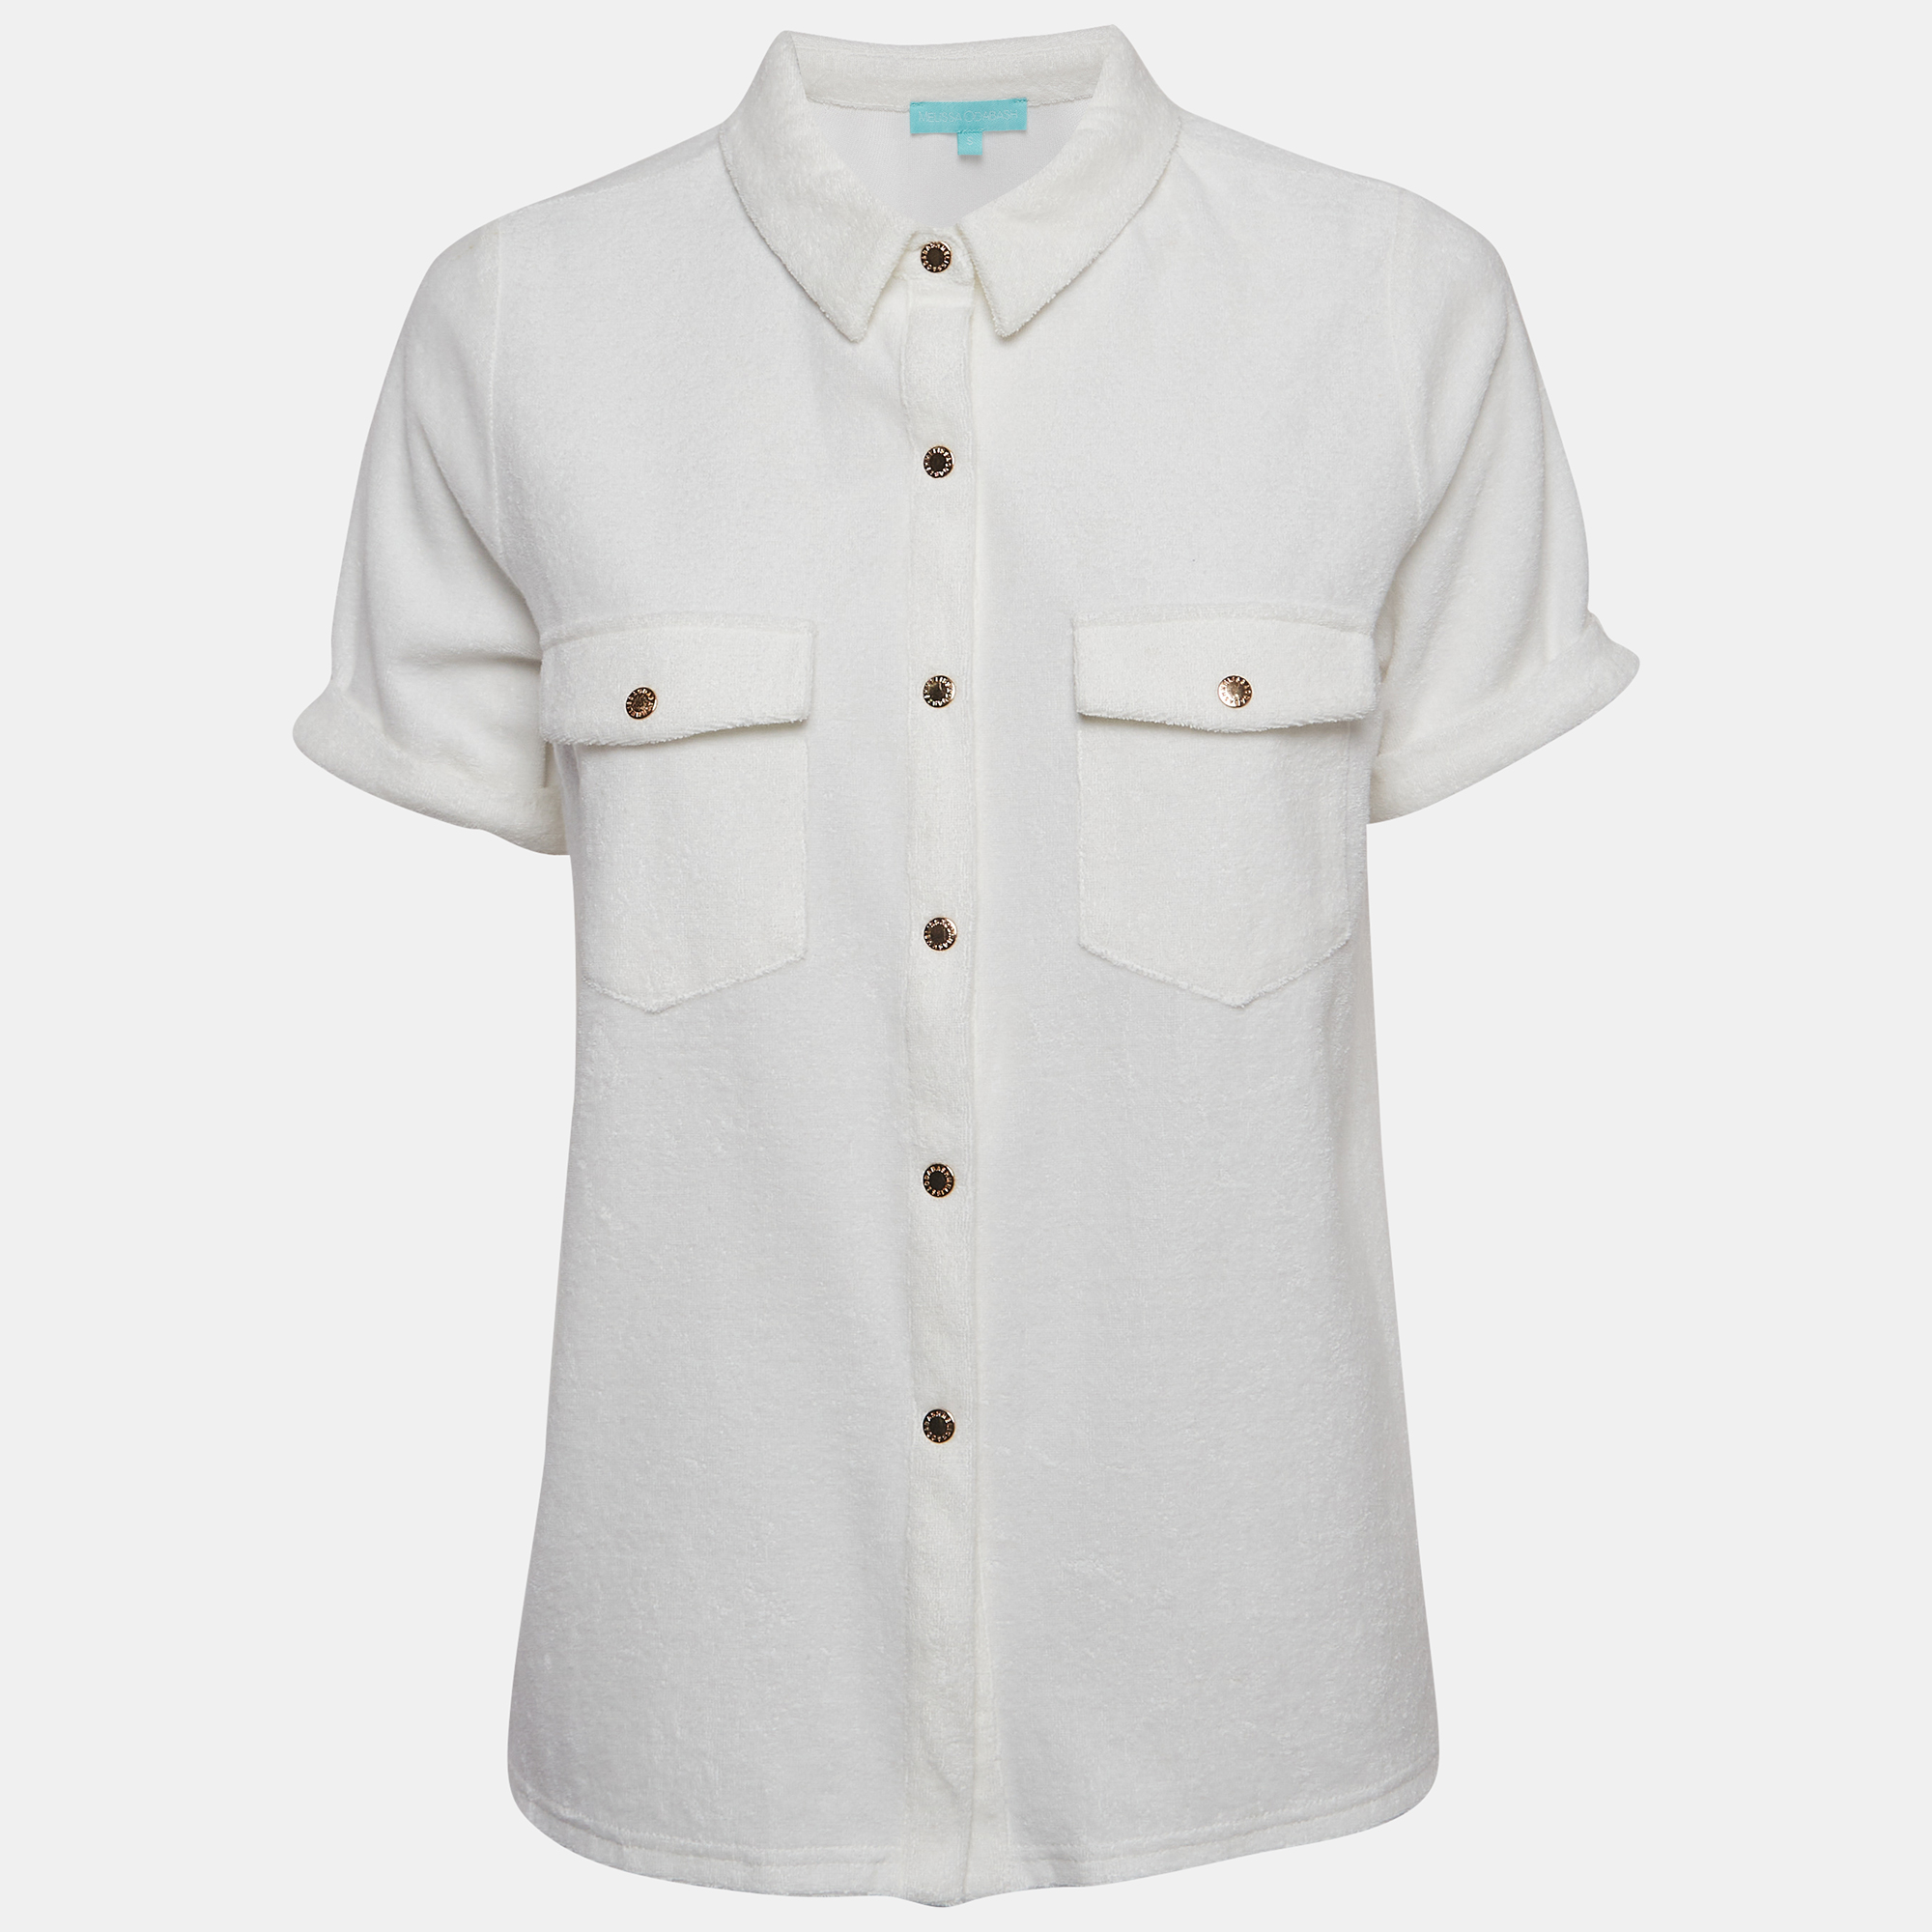 Melissa odabash white cotton terry button front tori shirt s